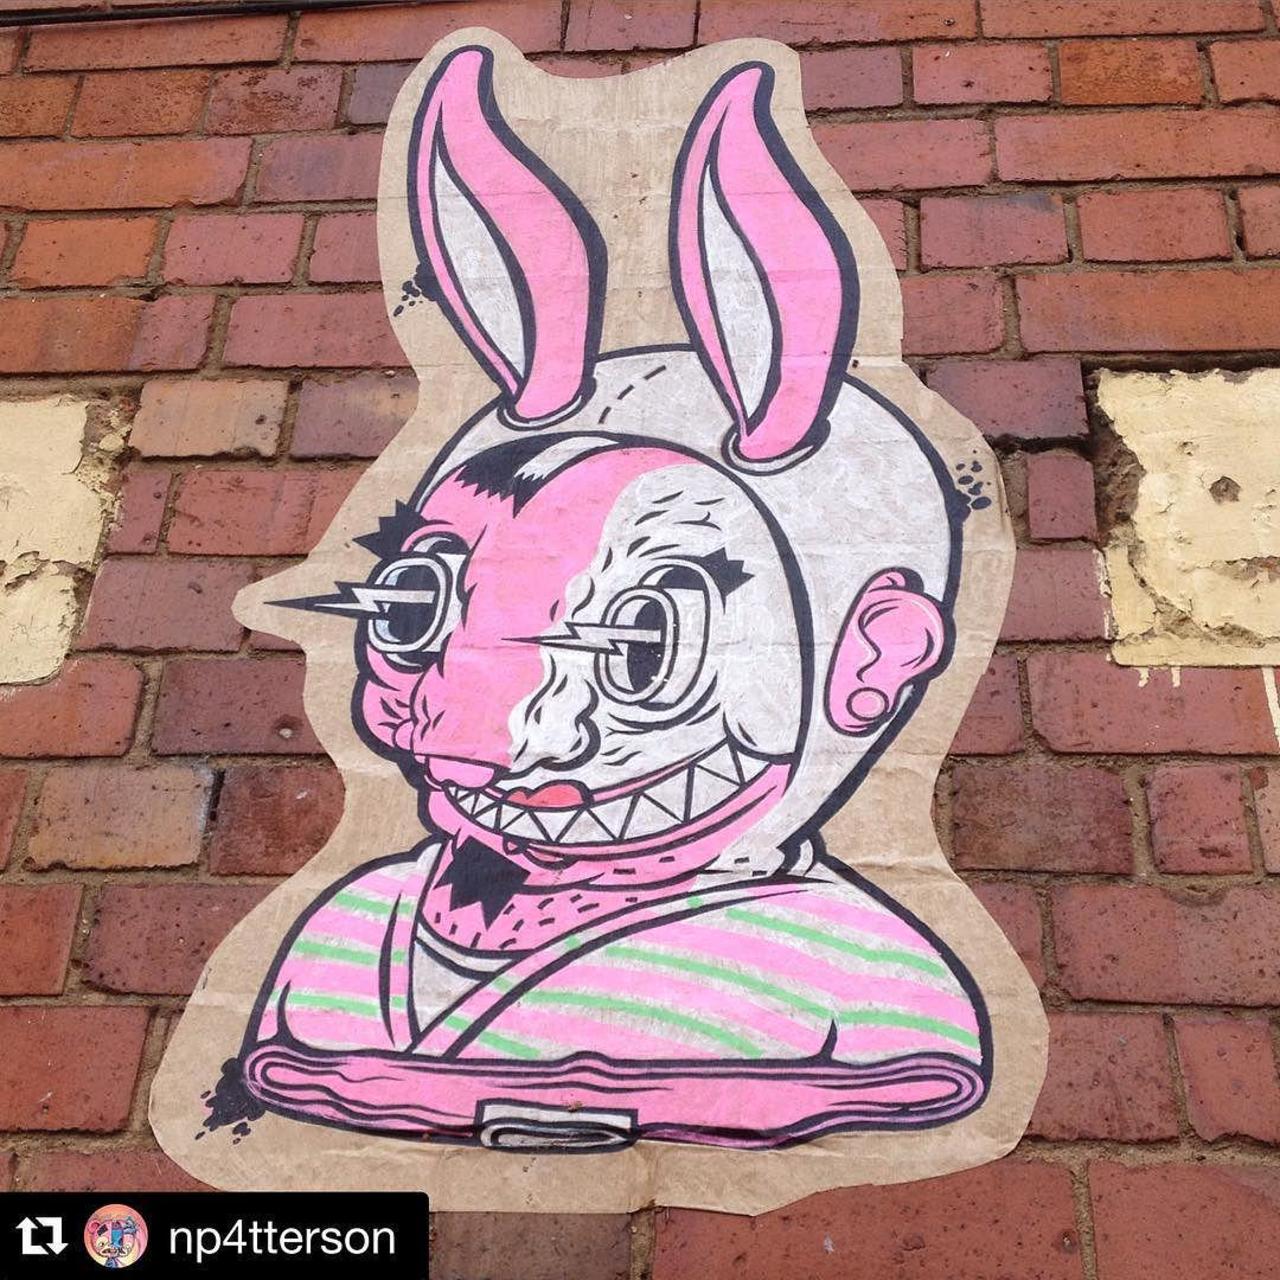 RT @GraffSpotting: #GraffSpotting #Instagram @setdebelleza #streetart #graffiti #digbeth @StreetArtBrum http://t.co/WVVkmLL8LF